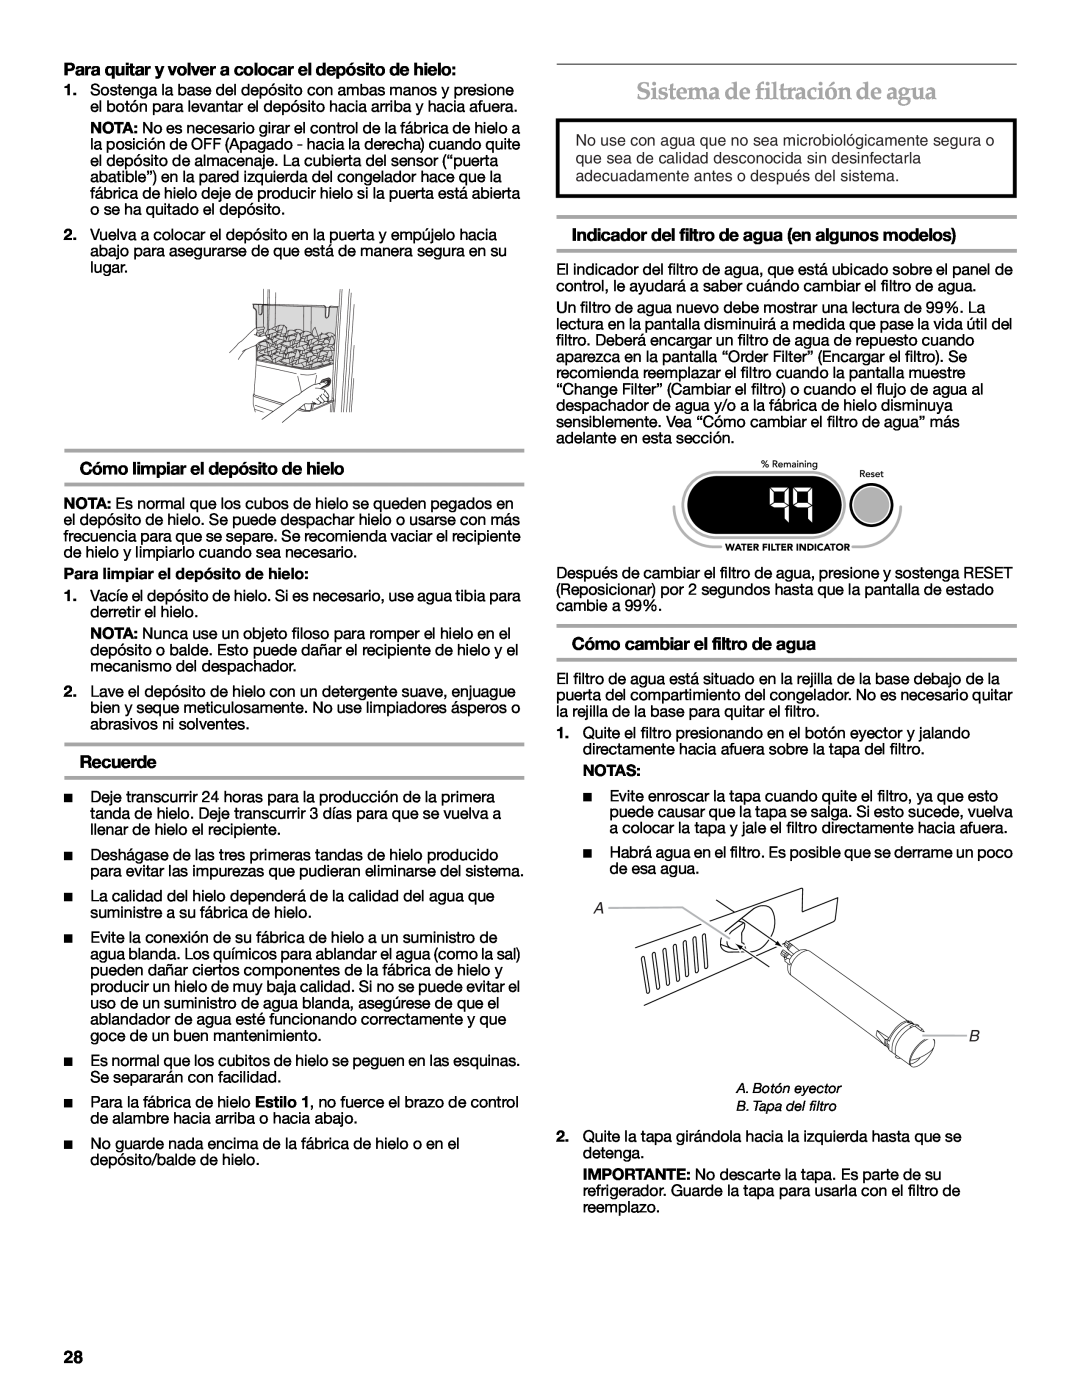 KitchenAid KSSC48QVS manual Sistema de filtración de agua, Para quitar y volver a colocar el depósito de hielo, Recuerde 